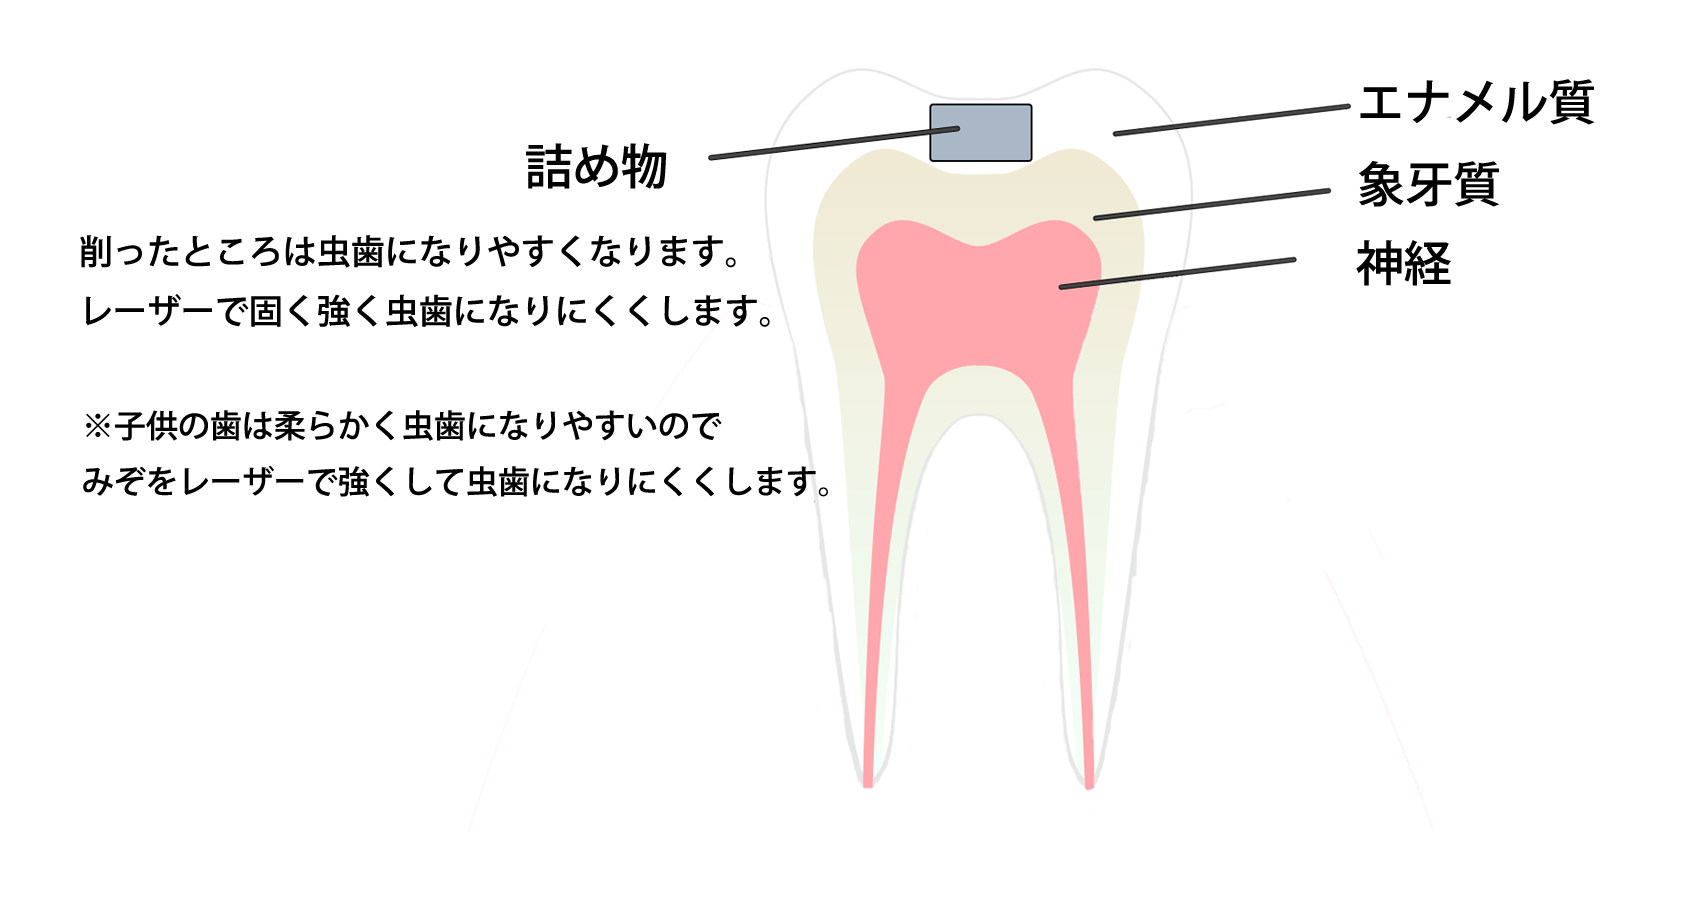 歯も生きています。 神経を取ってしまうと死んでしまい弱くなってしまいます。 神経に近いところをレーザーで強くし、神経を保護し、歯を長持ちさせます